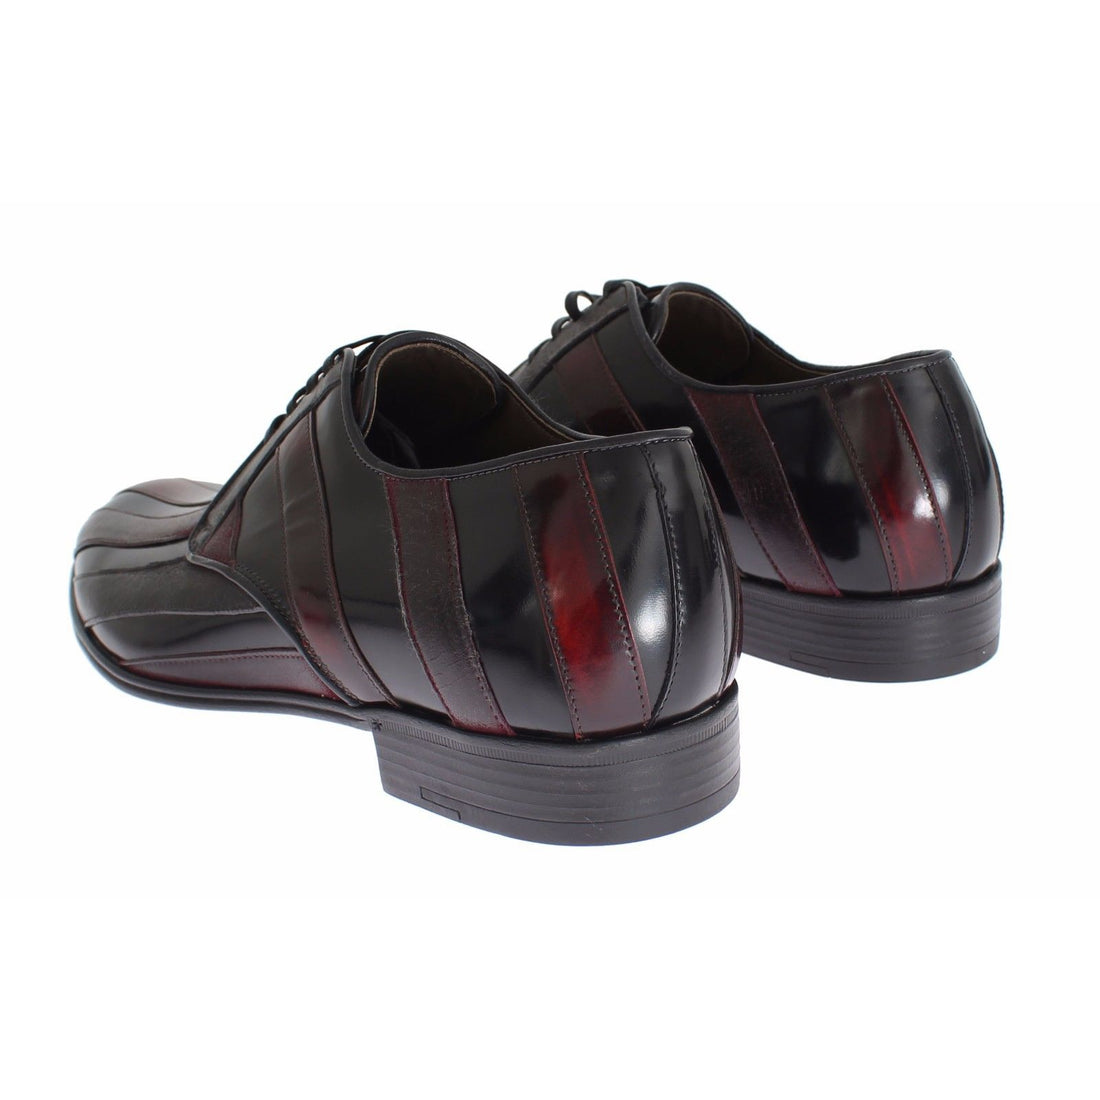 Dolce & Gabbana Black Bordeaux Leather Dress Formal Shoes - Paris Deluxe